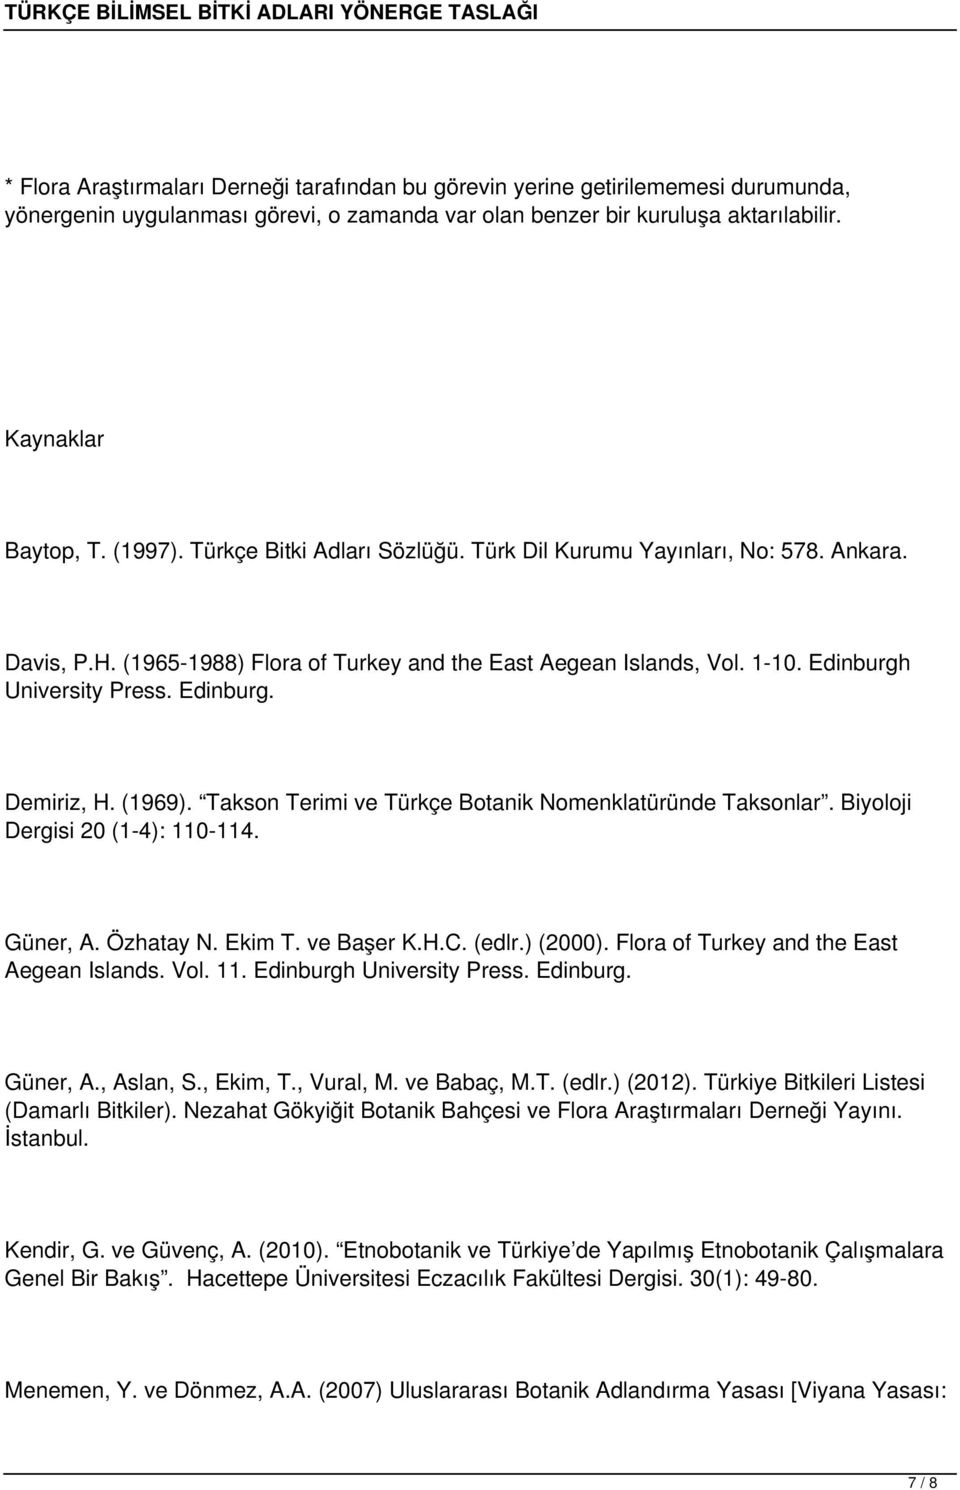 (1969). Takson Terimi ve Türkçe Botanik Nomenklatüründe Taksonlar. Biyoloji Dergisi 20 (1-4): 110-114. Güner, A. Özhatay N. Ekim T. ve Başer K.H.C. (edlr.) (2000).